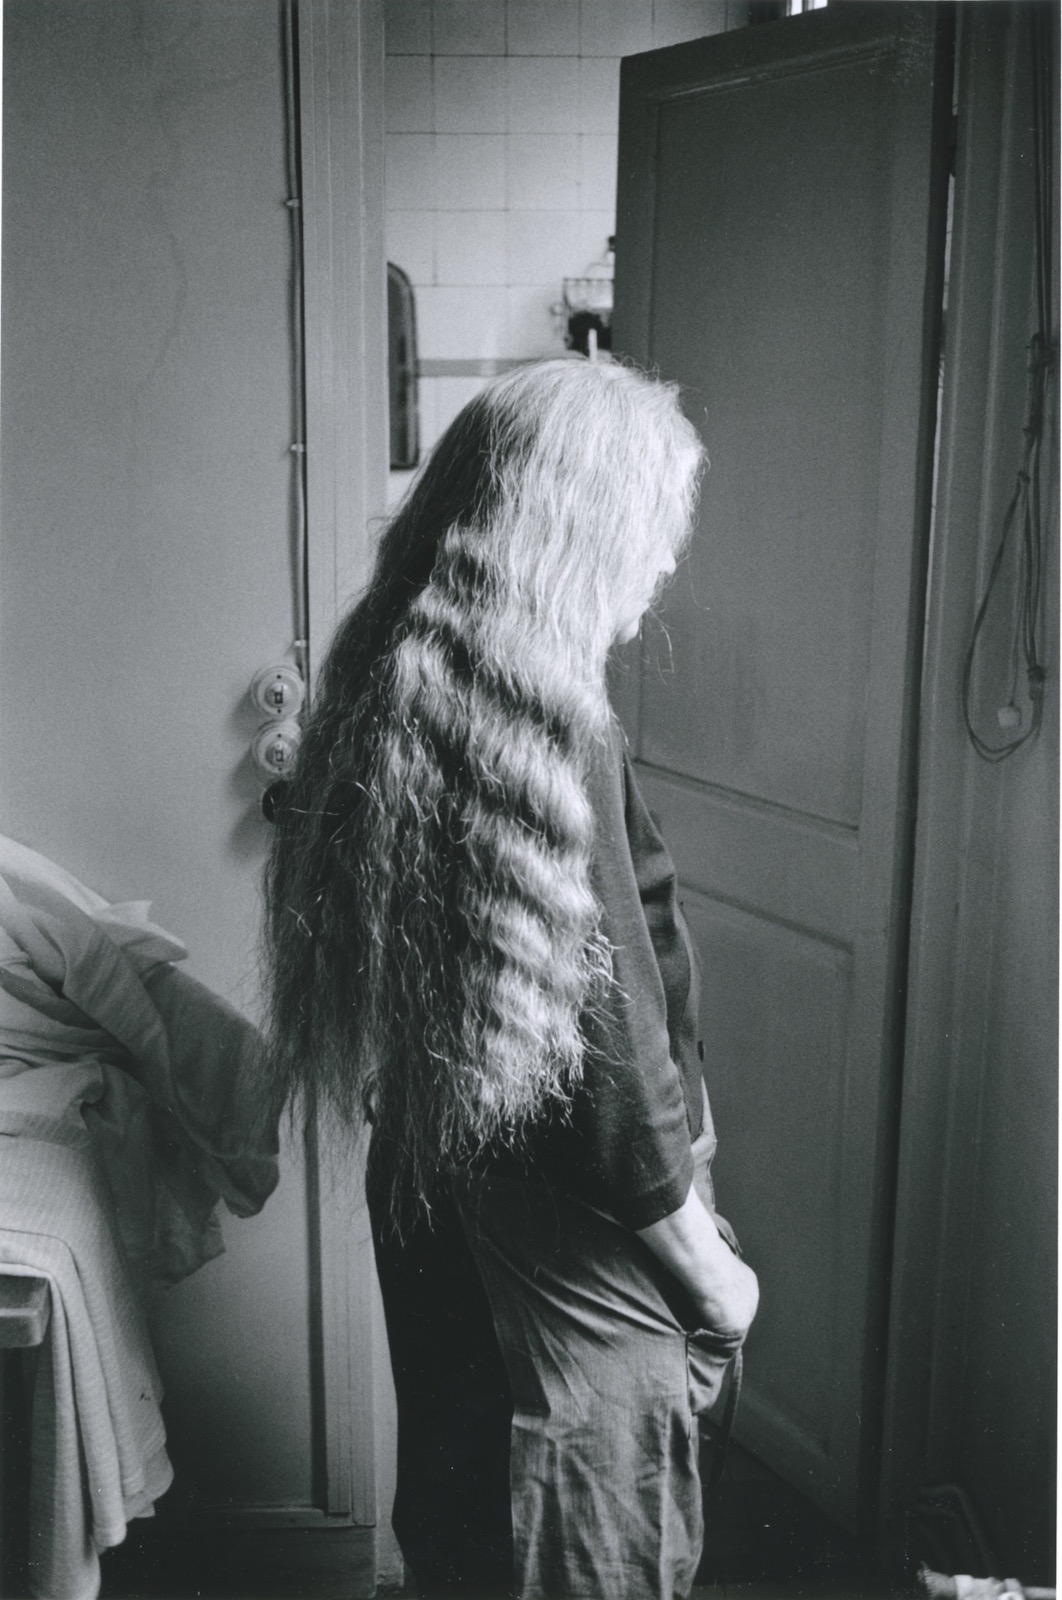 Louise cheveux défaits, de 3/4 dos, 1978-1979